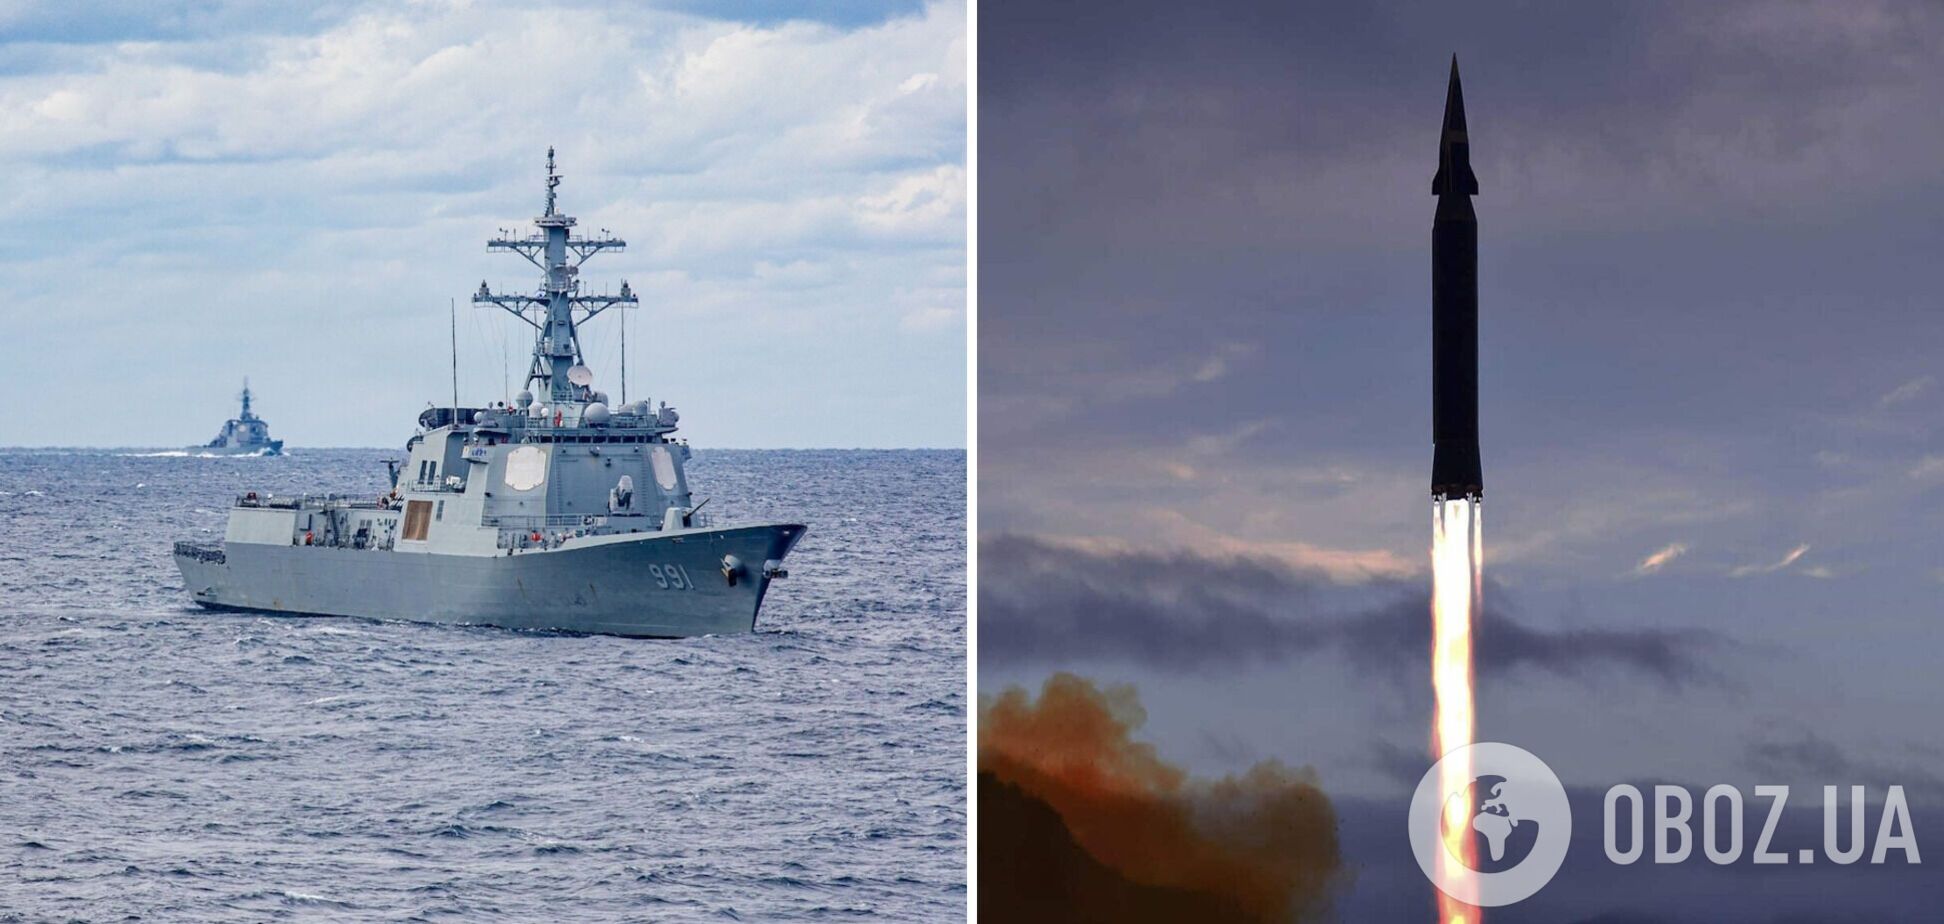 КНДР запустила две баллистические ракеты в сторону Японского моря, где США, Япония и Южная Корея проводили совместные учения